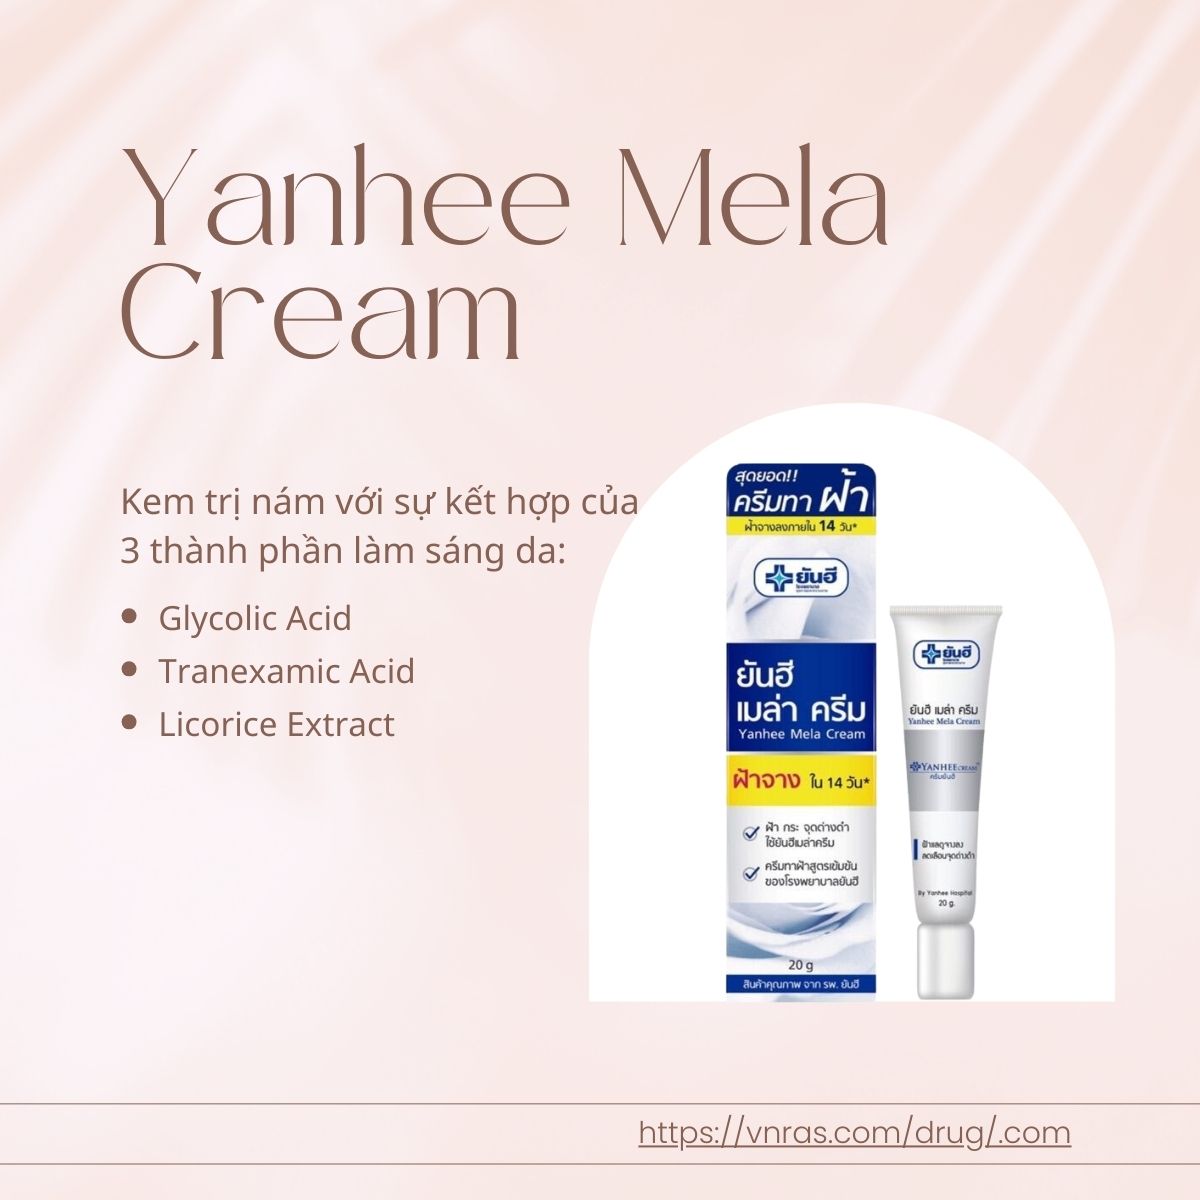 Yanhee Mela Cream